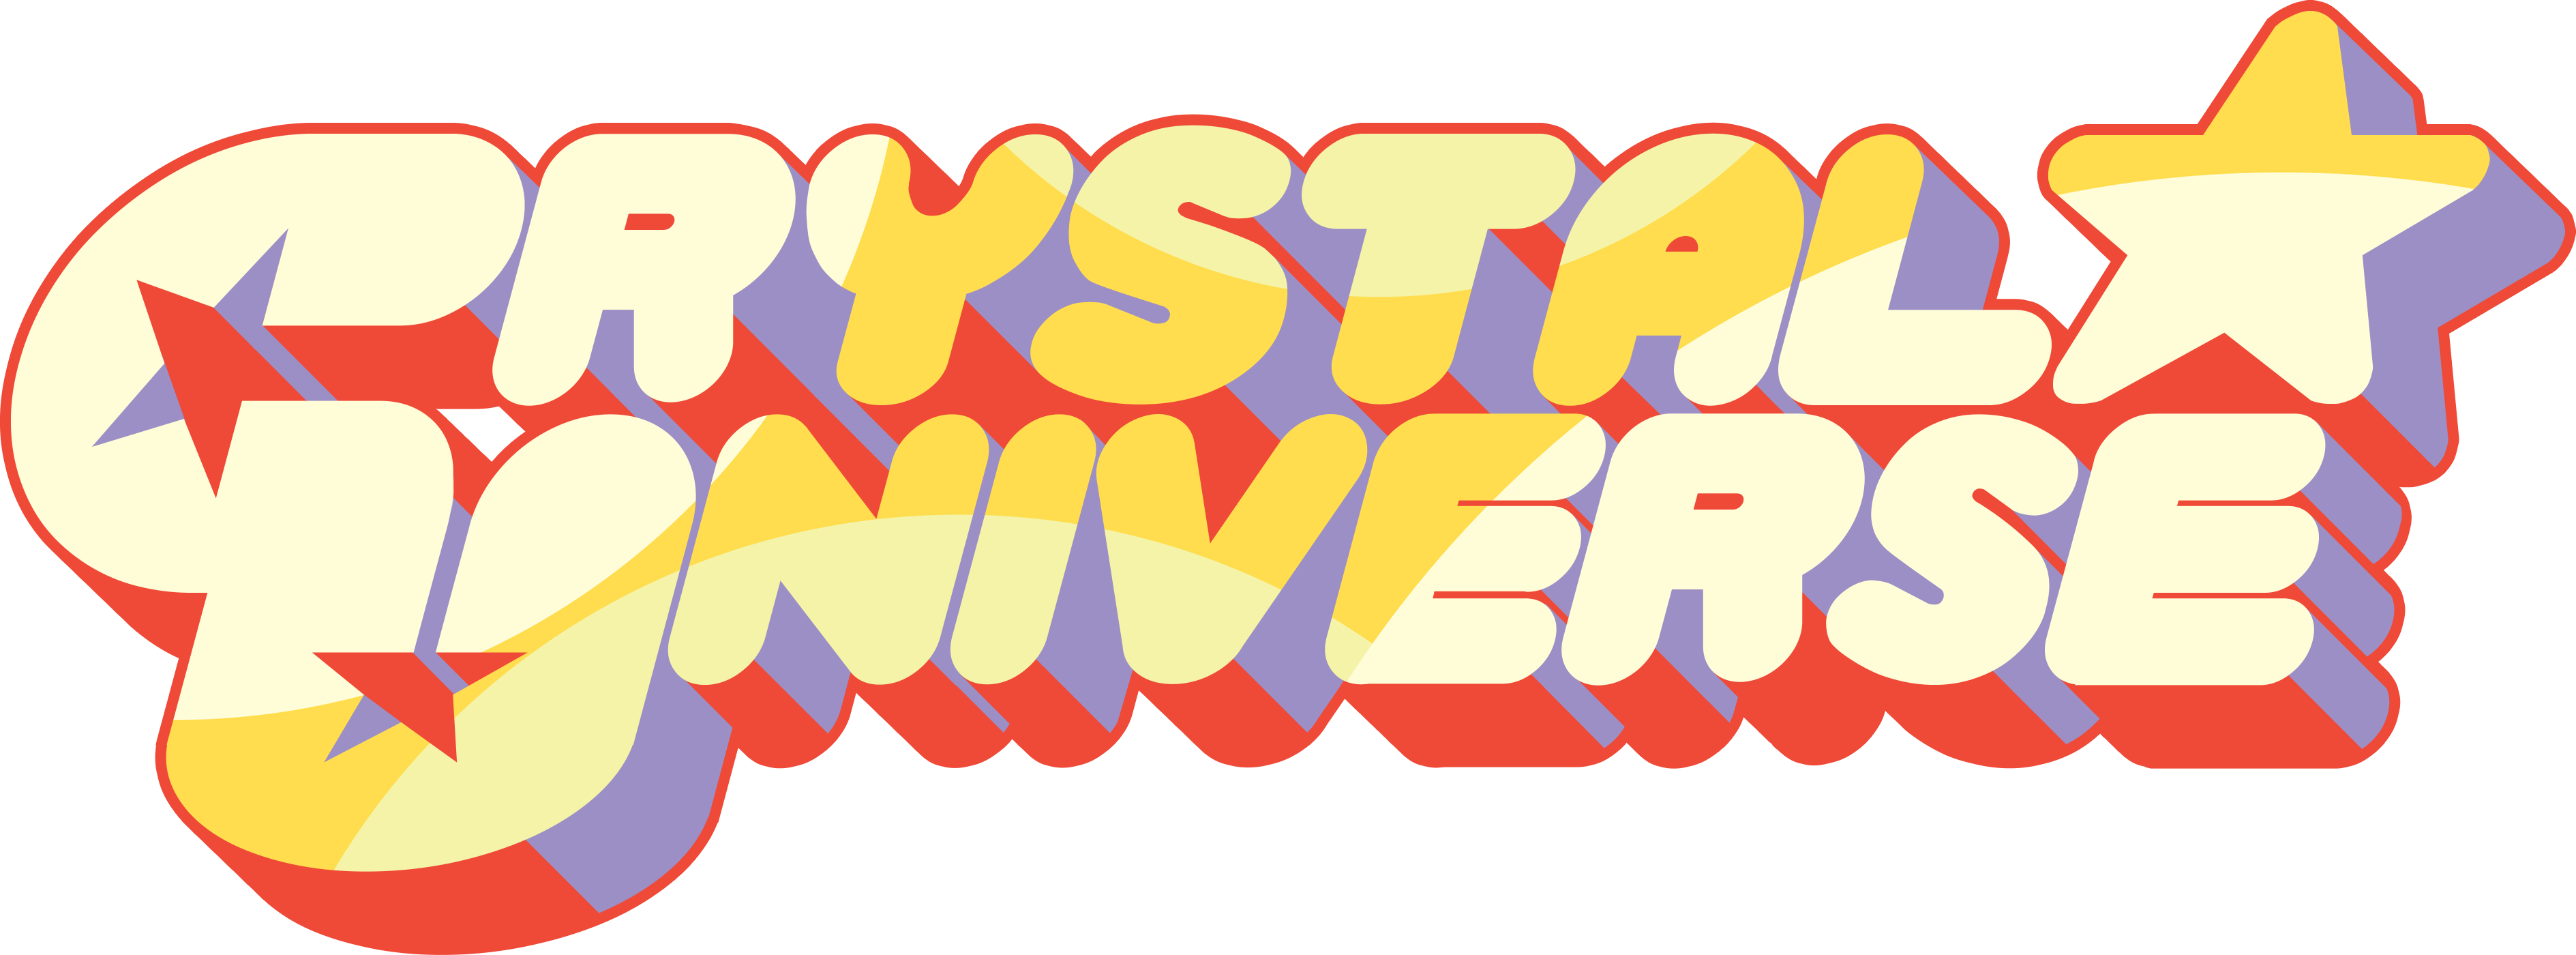 Steven Universe Logo Png - Handmadely